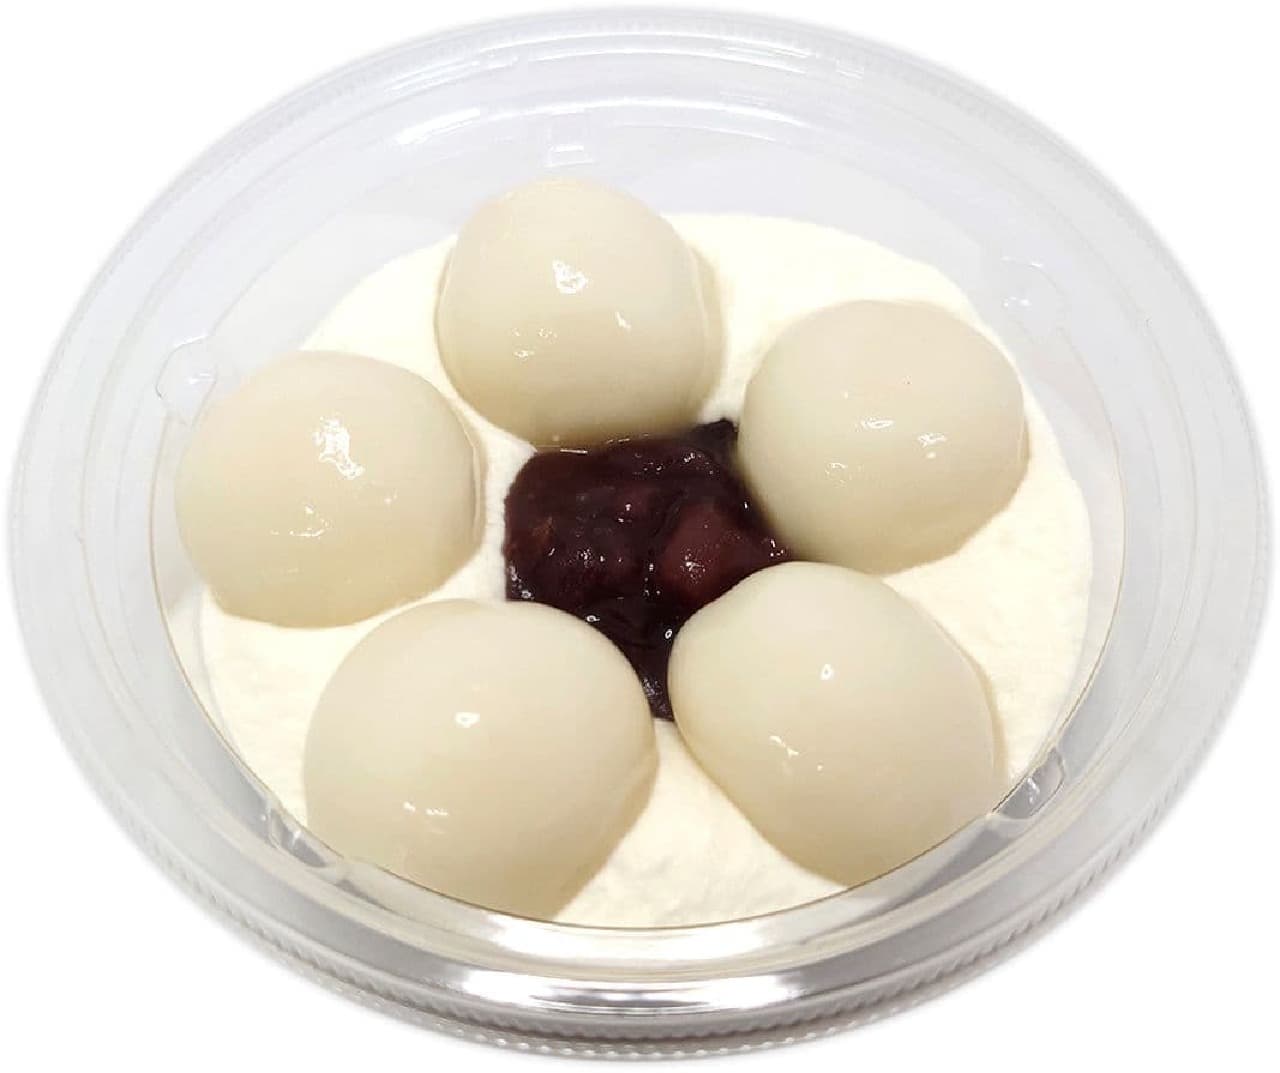 セブン-イレブン「北海道十勝産小豆使用白玉クリームぜんざい」